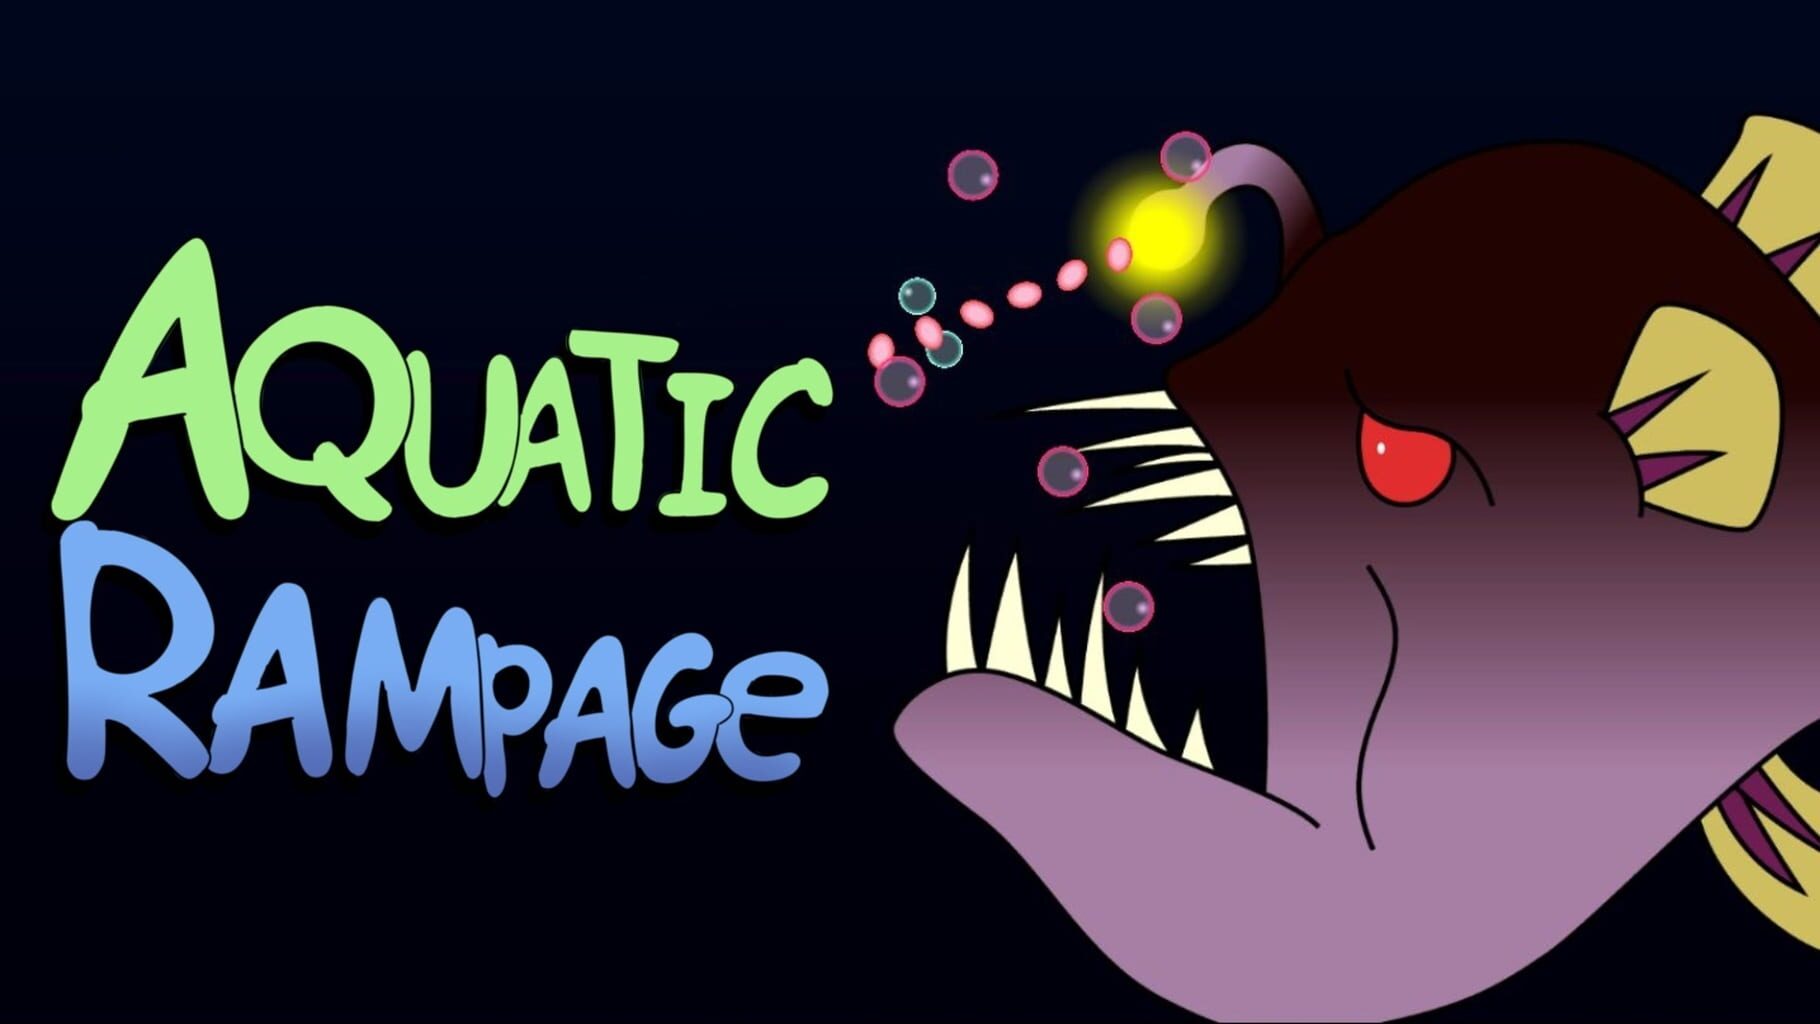 Aquatic Rampage artwork